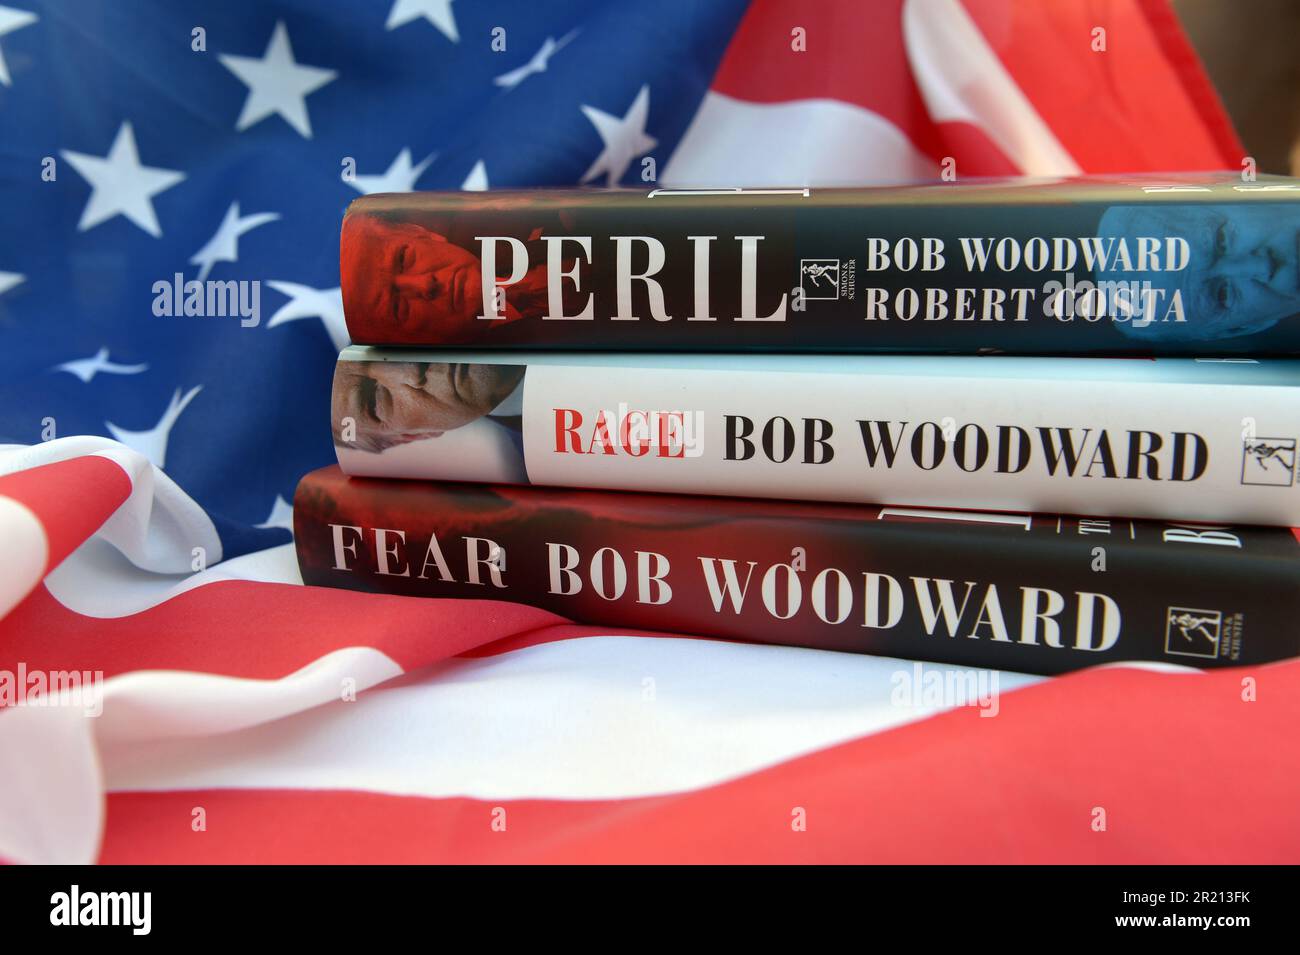 Pericolo, paura: Trump alla Casa Bianca, e Rage, tre libri del giornalista americano Bob Woodward sulla presidenza di Donald Trump. Peril, scritto da Woodward con Robert Costa, fu pubblicato il 21 settembre 2021, mentre Fear fu pubblicato il 11 settembre 2018 e Rage fu pubblicato il 15 settembre 2020. Foto Stock